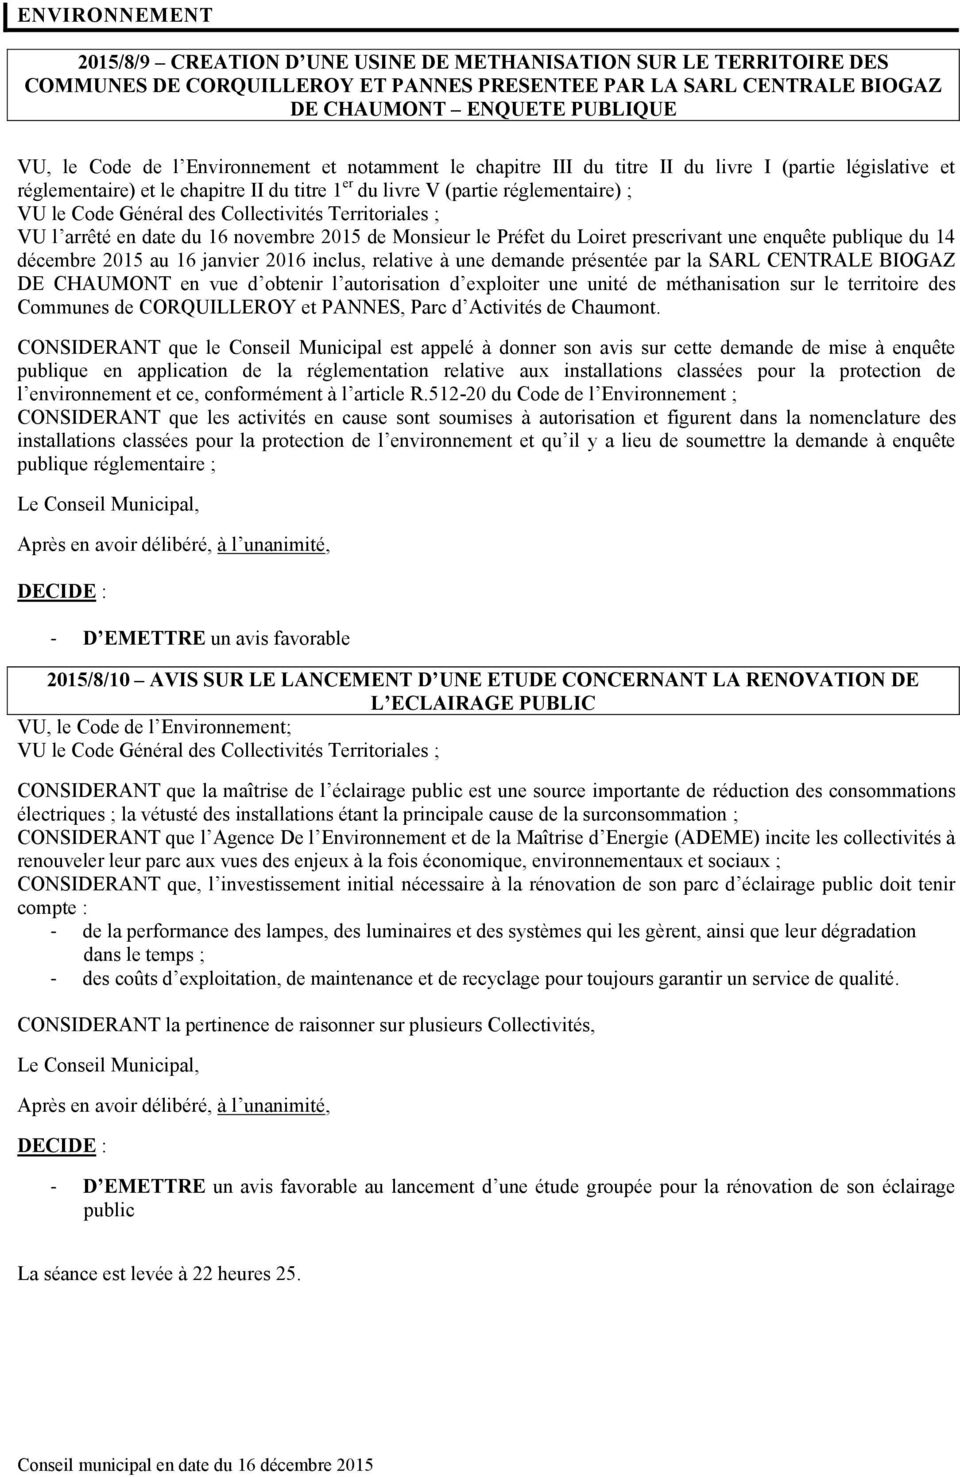 novembre 05 de Monsieur le Préfet du Loiret prescrivant une enquête publique du 4 décembre 05 au 6 janvier 06 inclus, relative à une demande présentée par la SARL CENTRALE BIOGAZ DE CHAUMONT en vue d